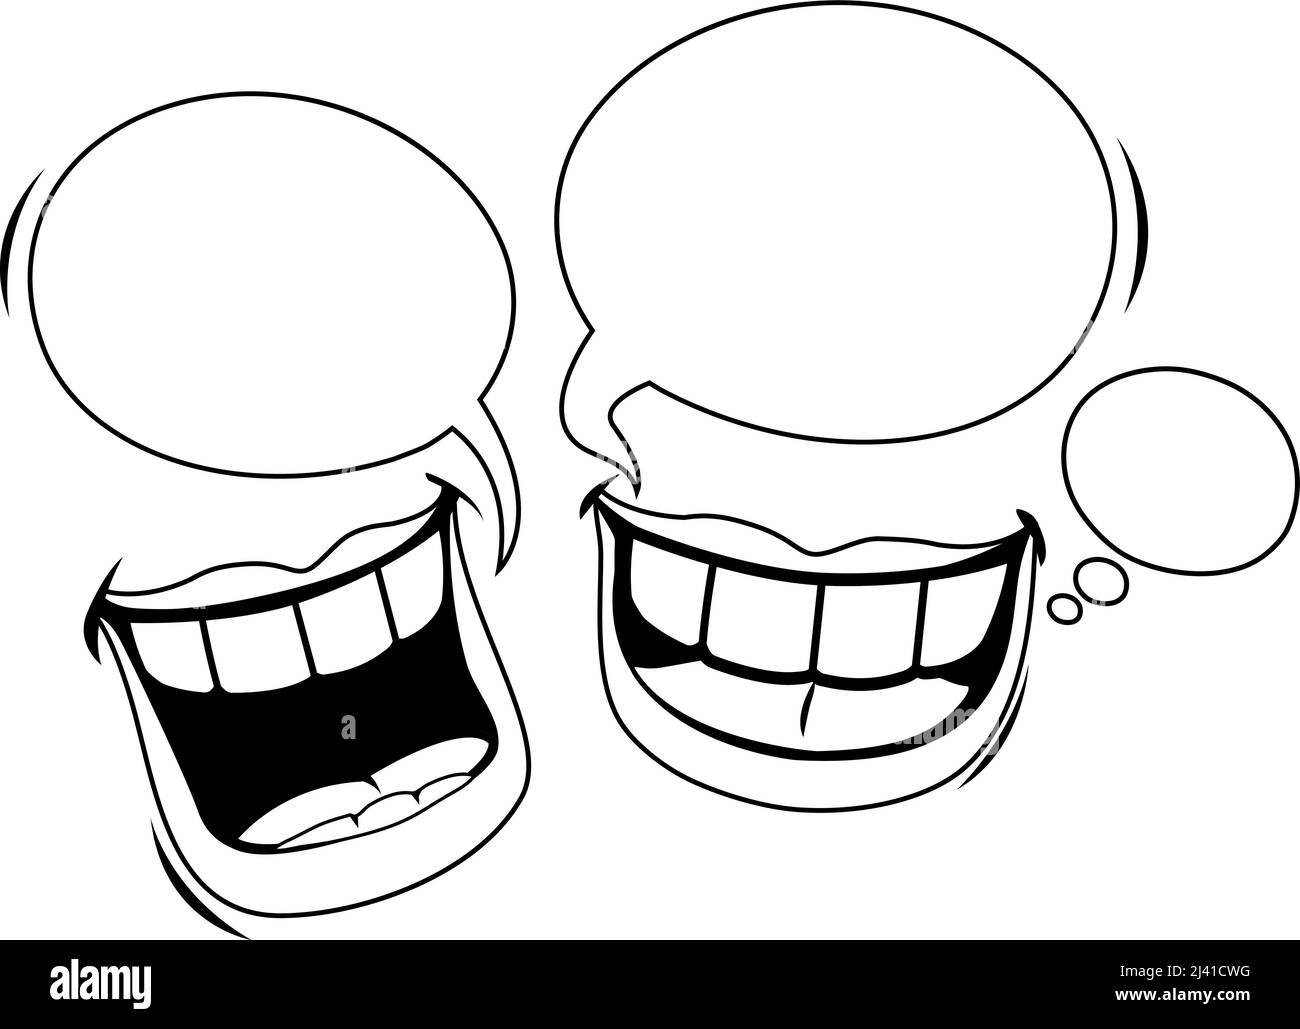 Labbra che parlano e ridono. Pagina di colorazione vettoriale in bianco e nero Illustrazione Vettoriale